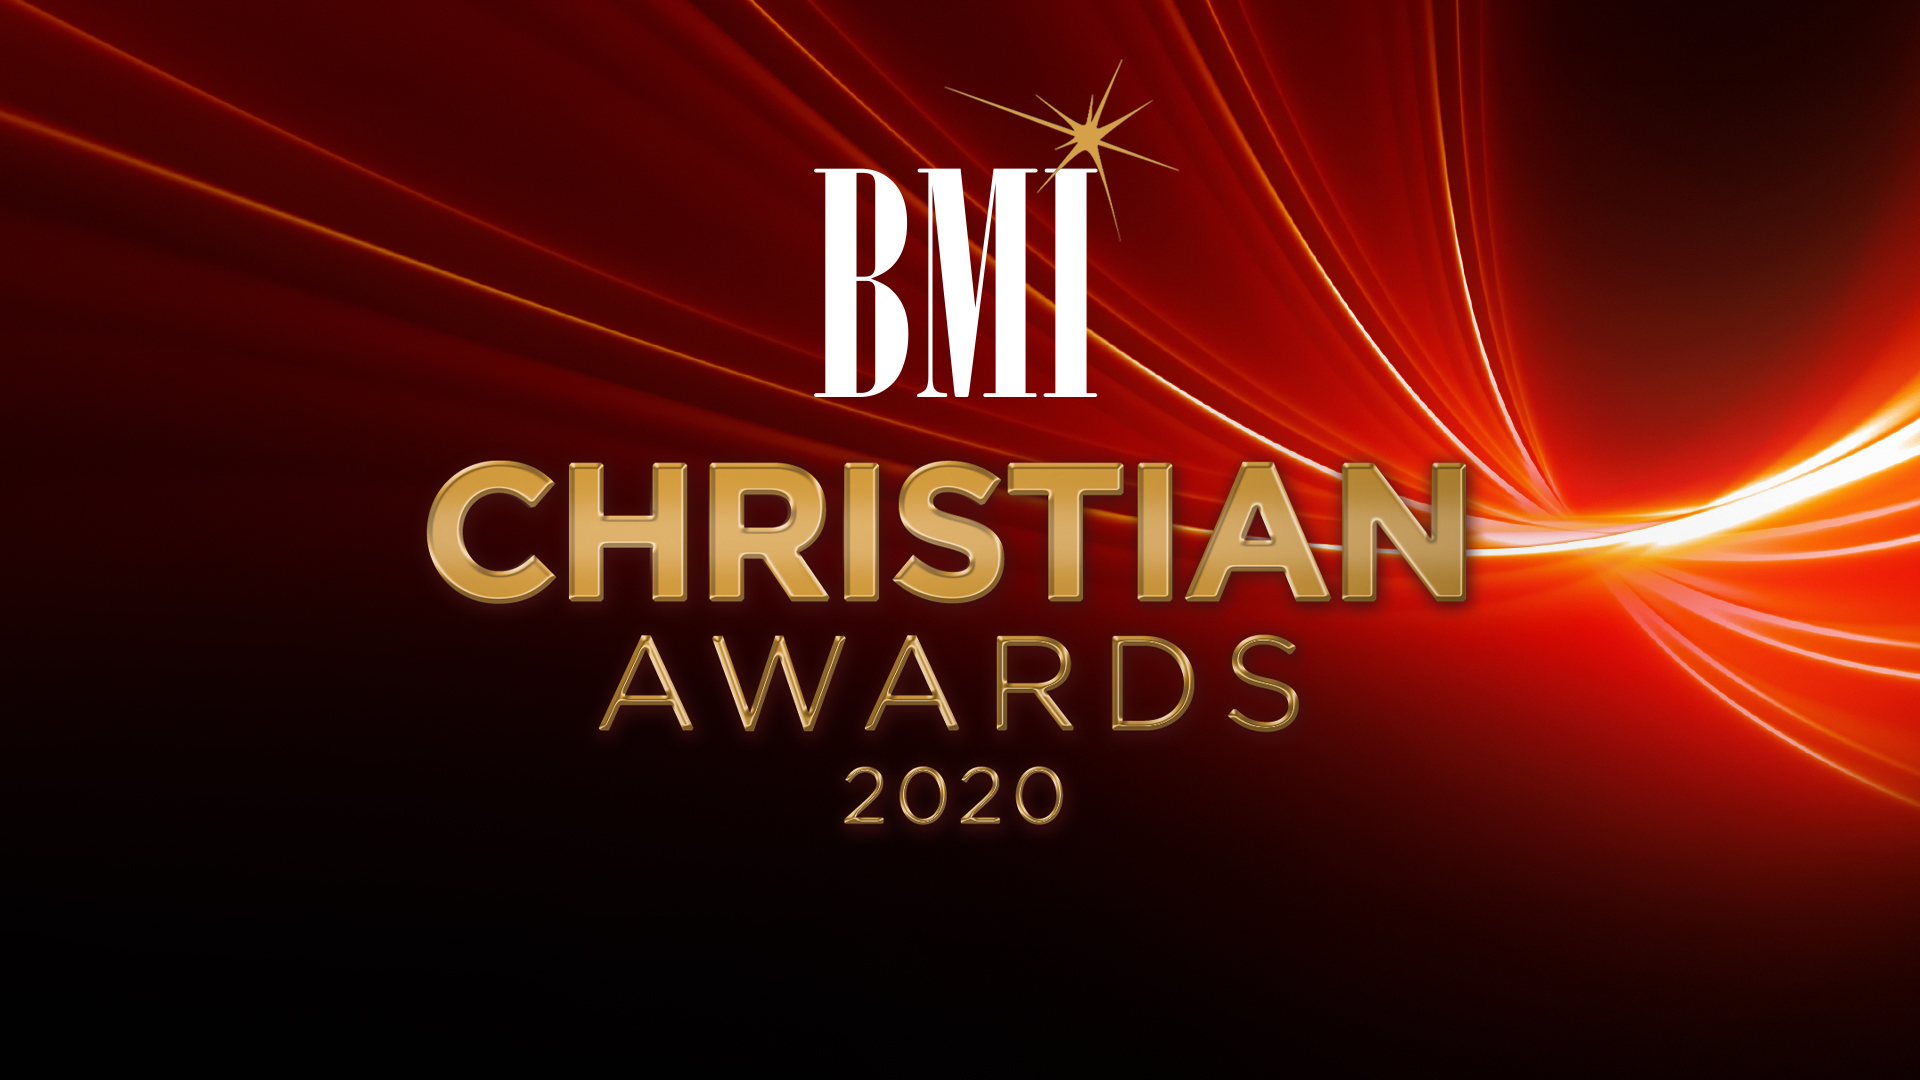 BMI Christian Awards 2020